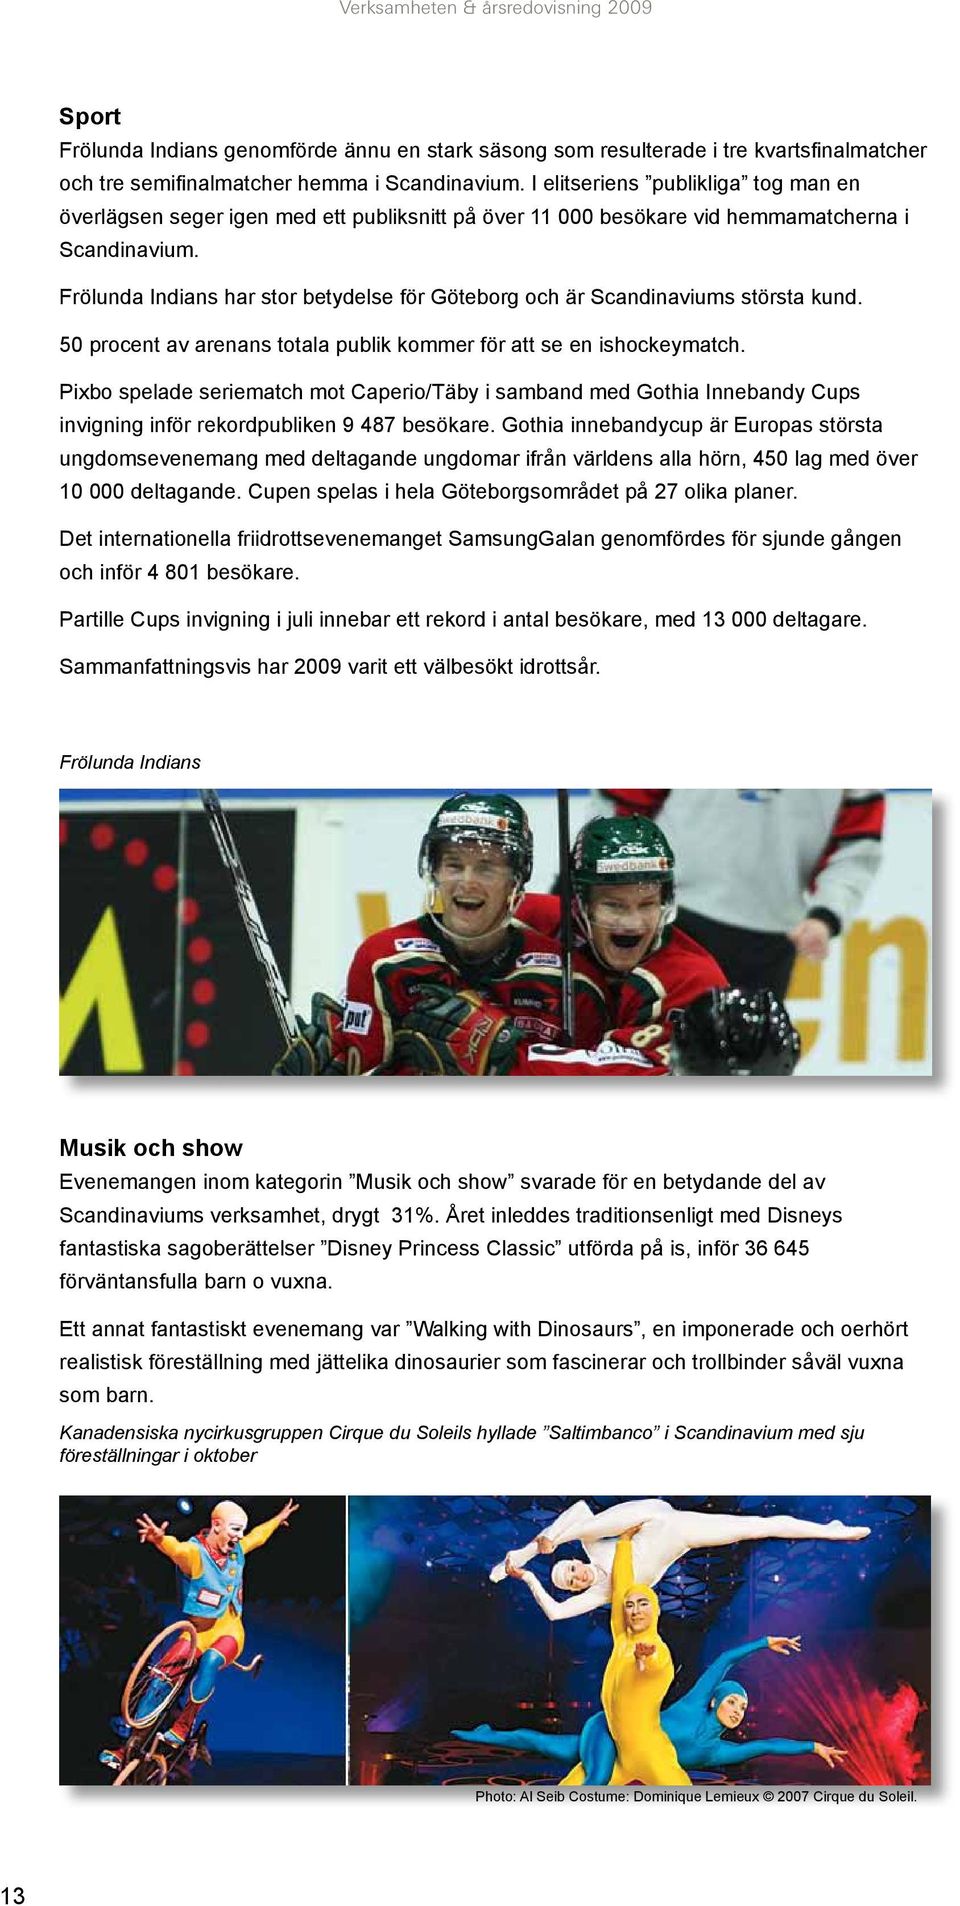 Frölunda Indians har stor betydelse för Göteborg och är Scandinaviums största kund. 50 procent av arenans totala publik kommer för att se en ishockeymatch.